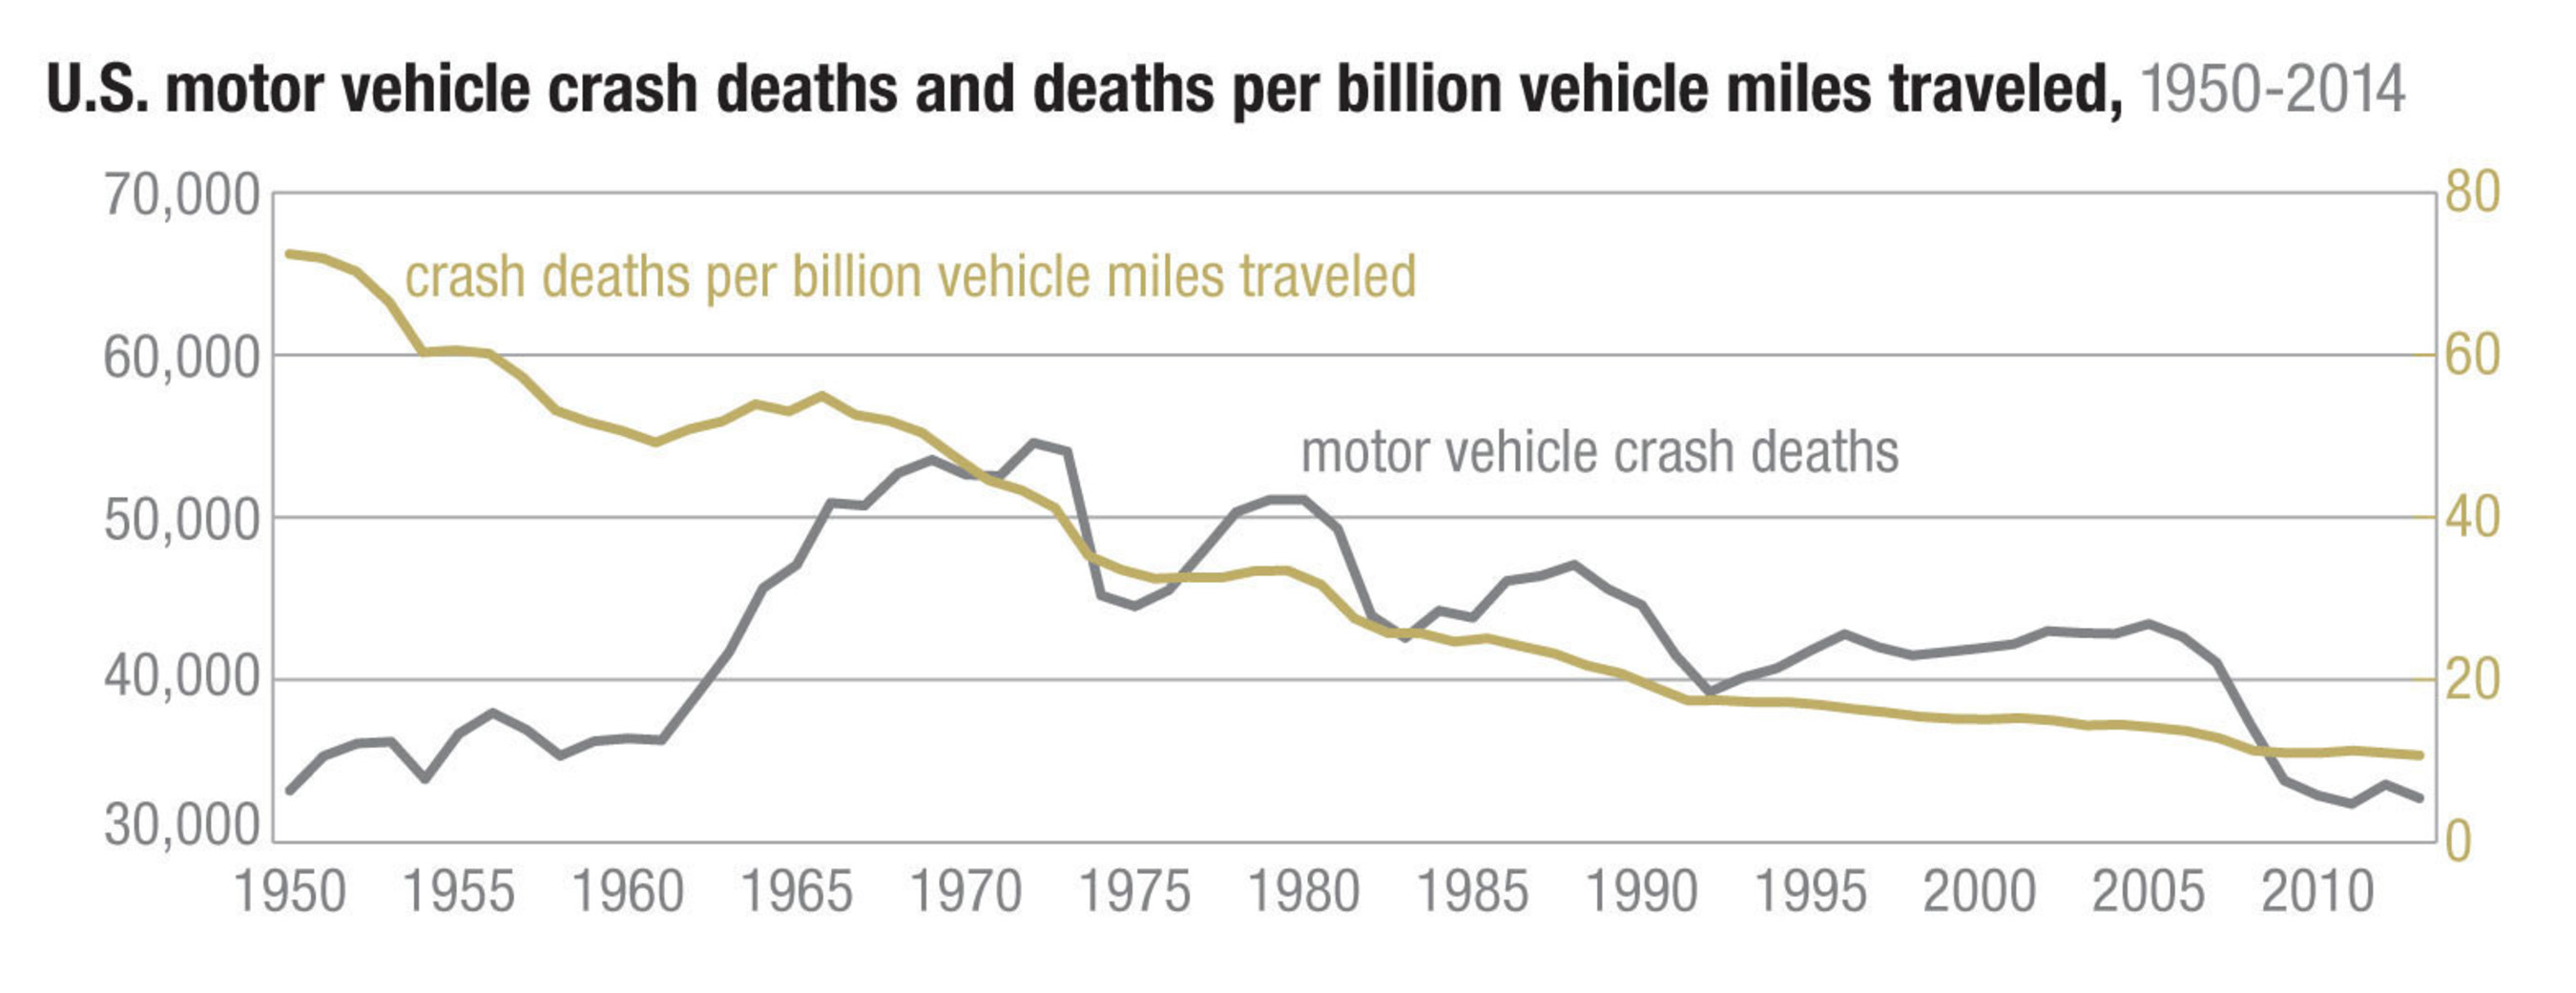 U.S. motor vehicle crash deaths and deaths per billion vehicle miles traveled, 1950-2014